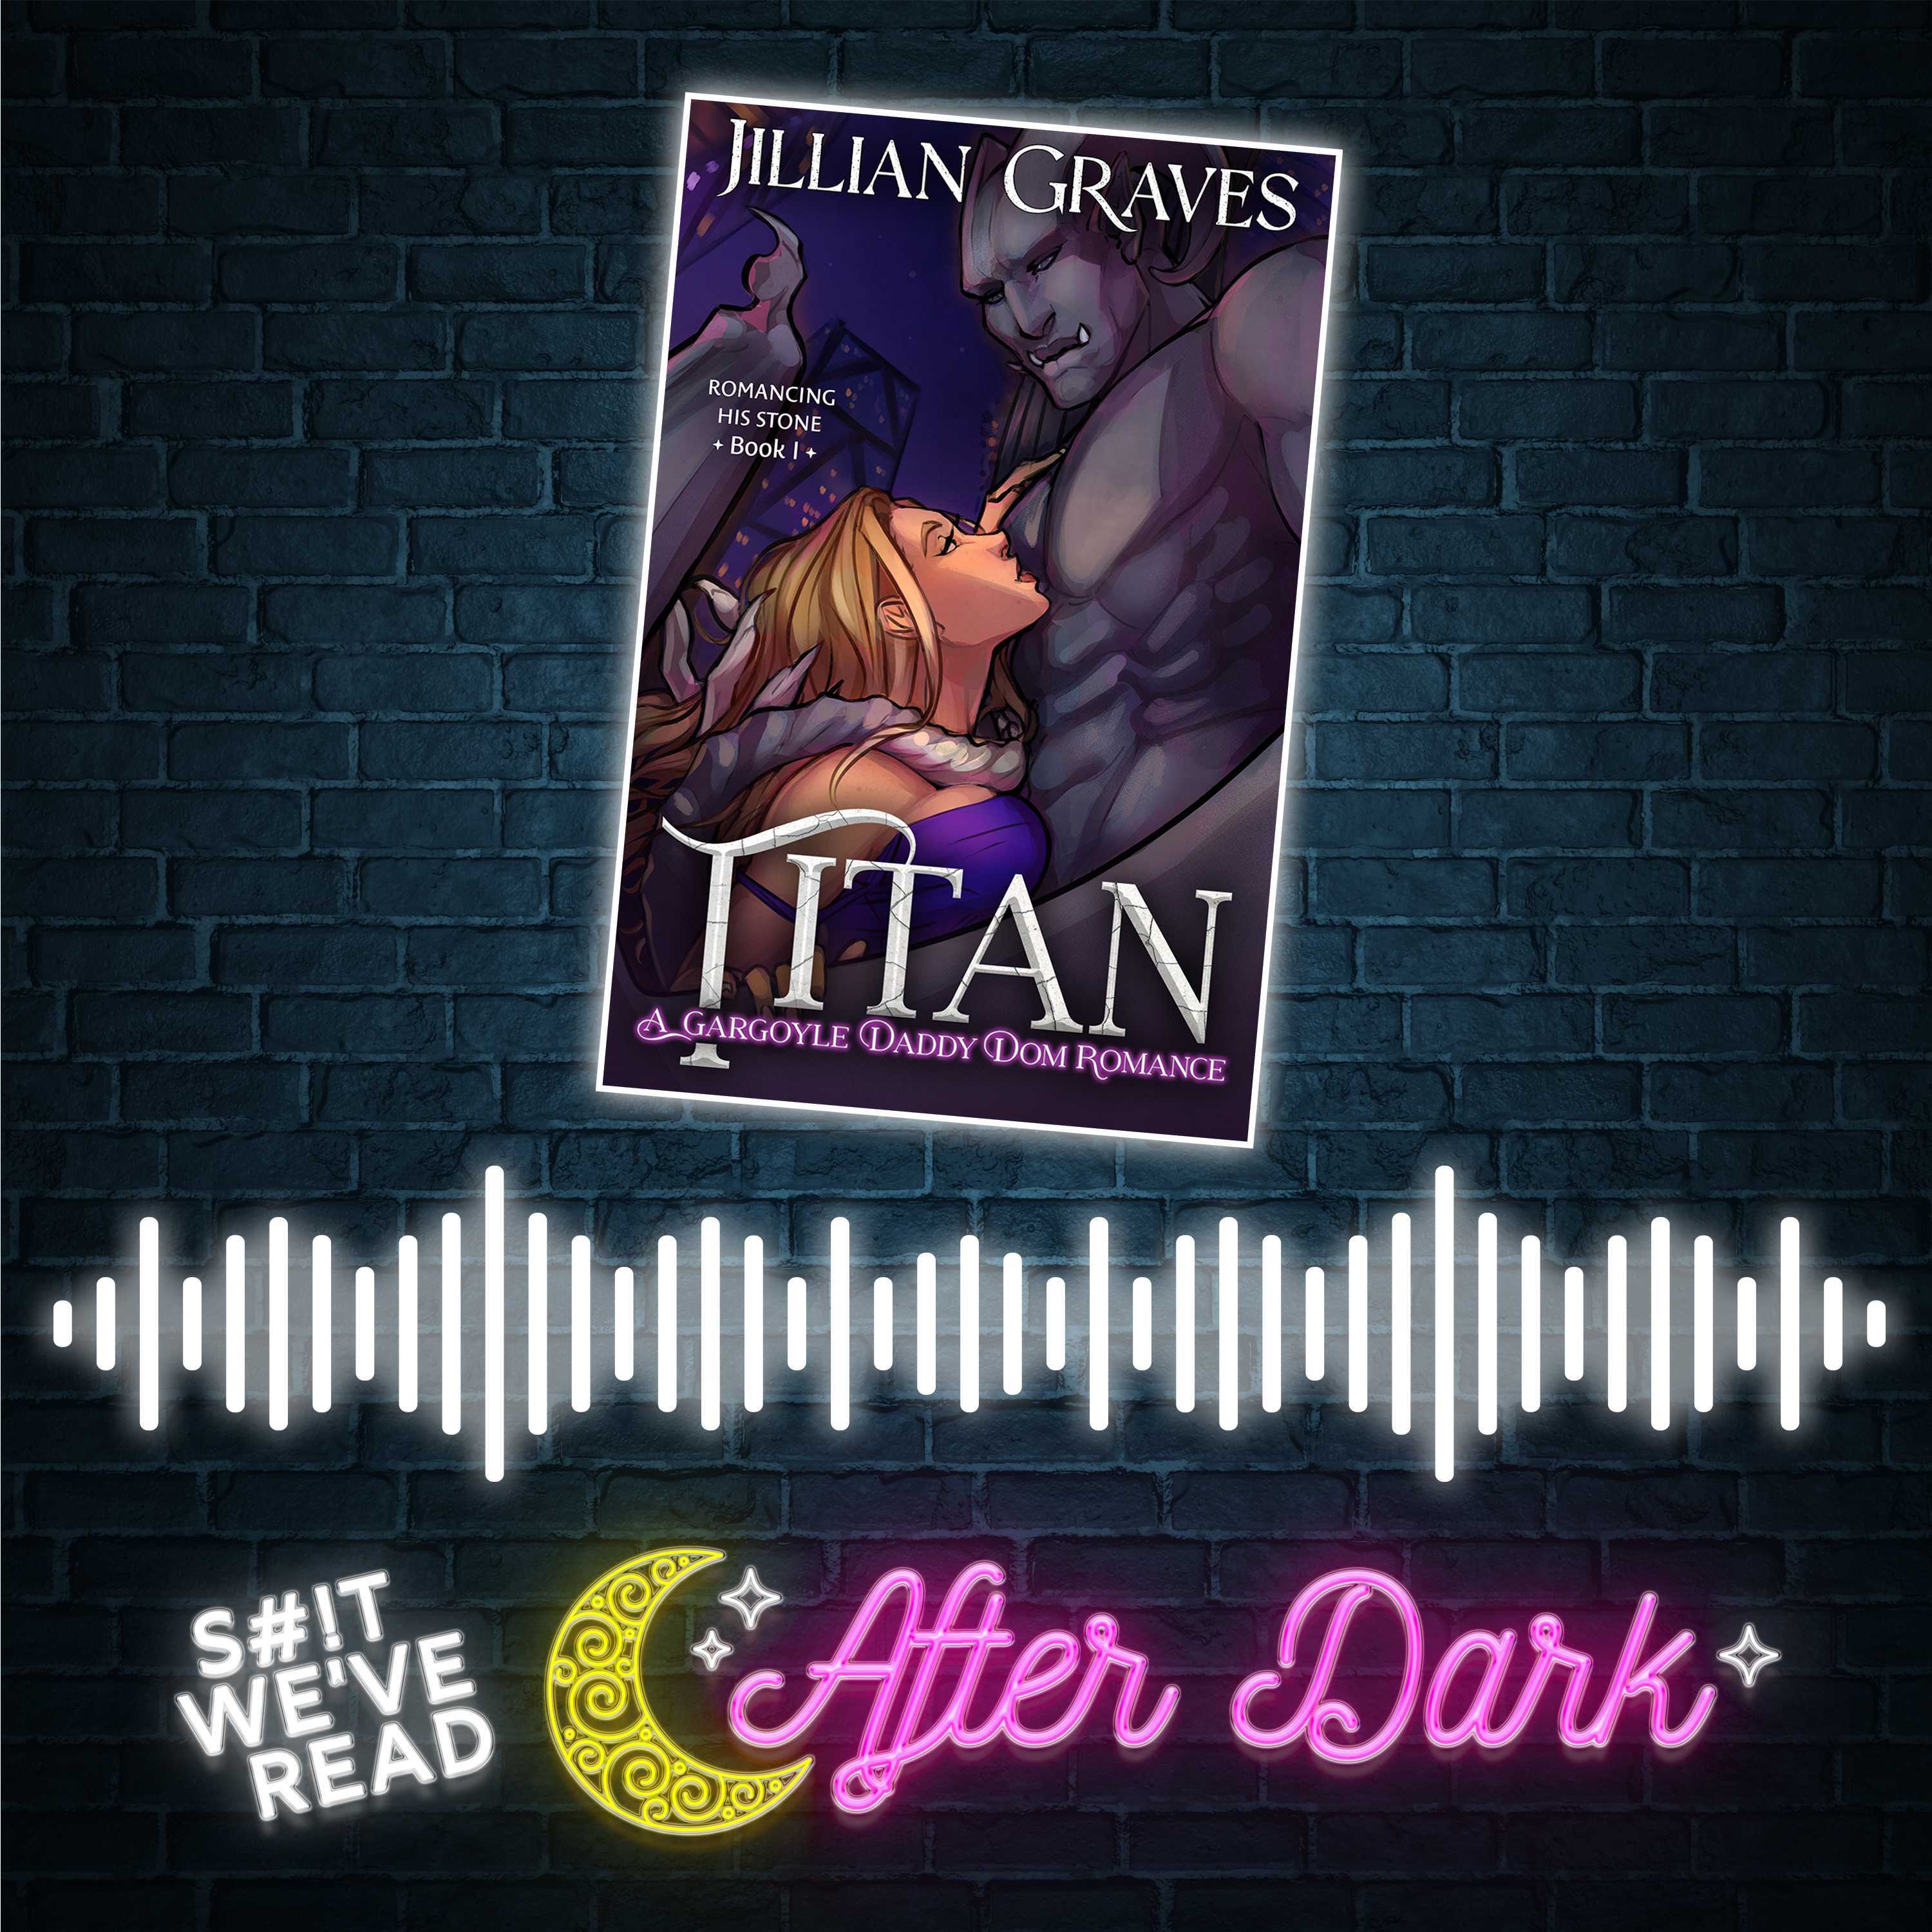 After Dark: Titan